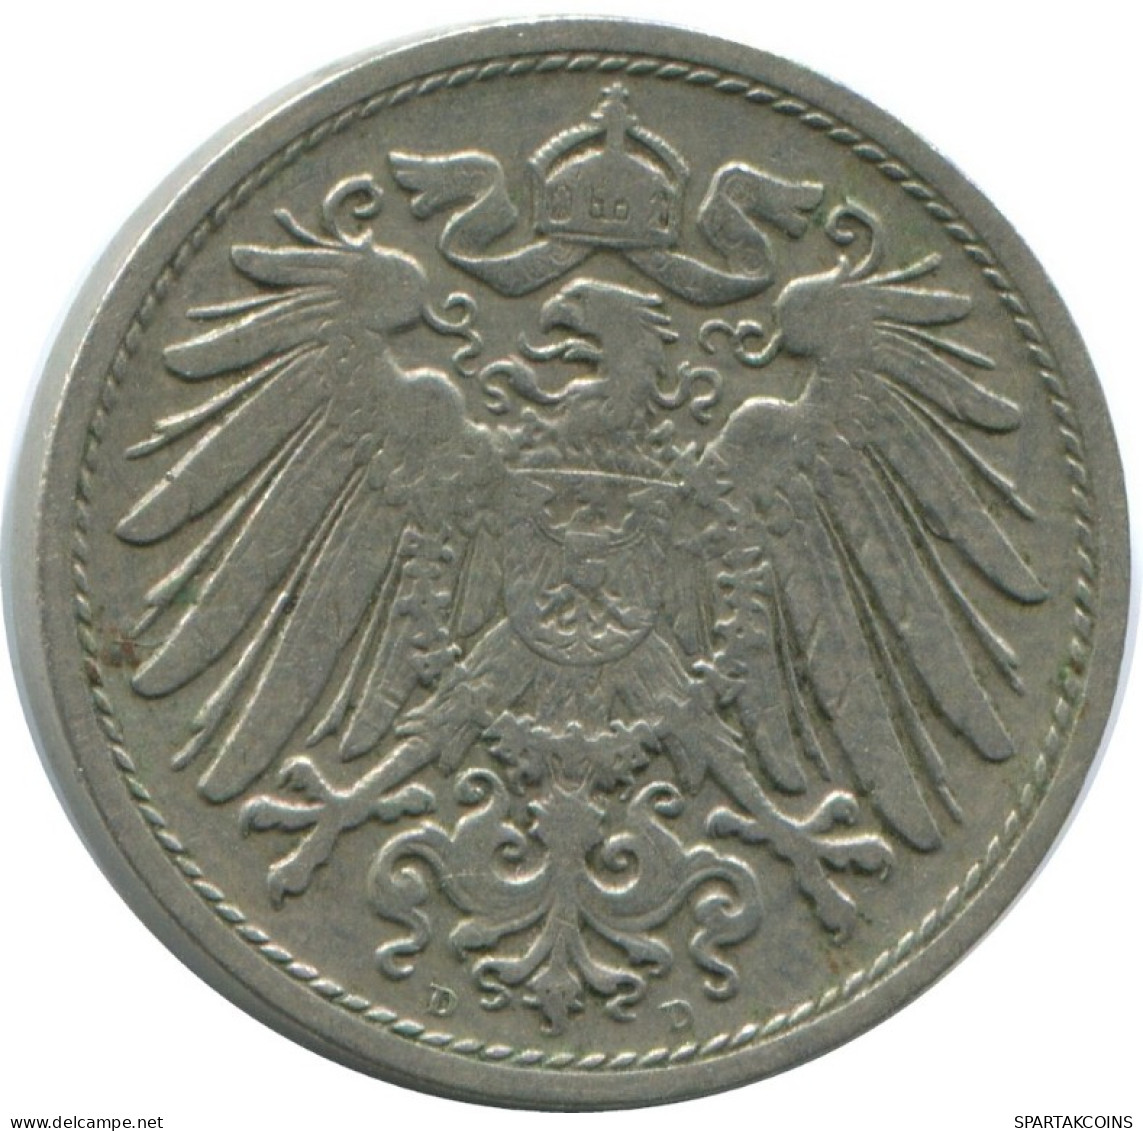 10 PFENNIG 1906 D DEUTSCHLAND Münze GERMANY #AE551.D.A - 10 Pfennig